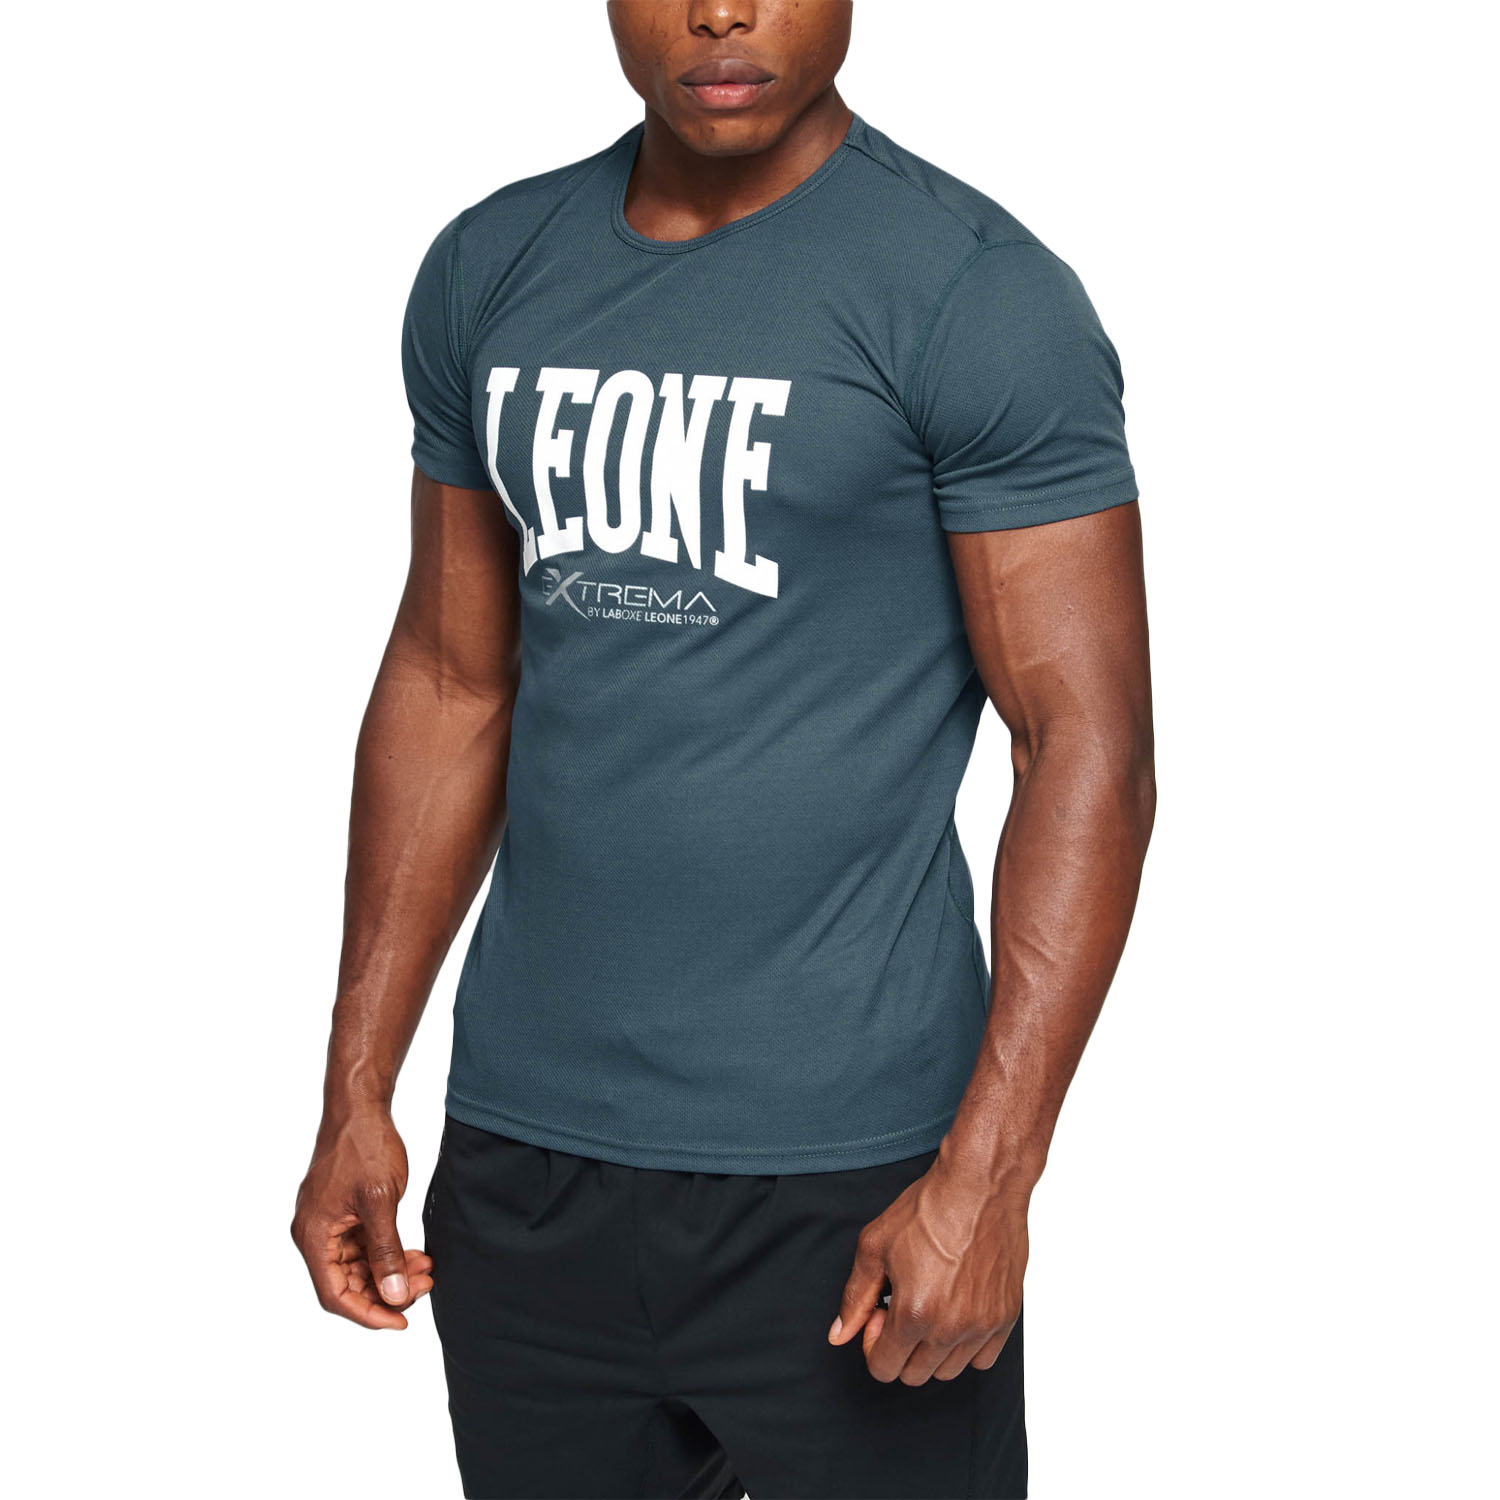 LEONE T-Shirt, Logo, ABX106, grau